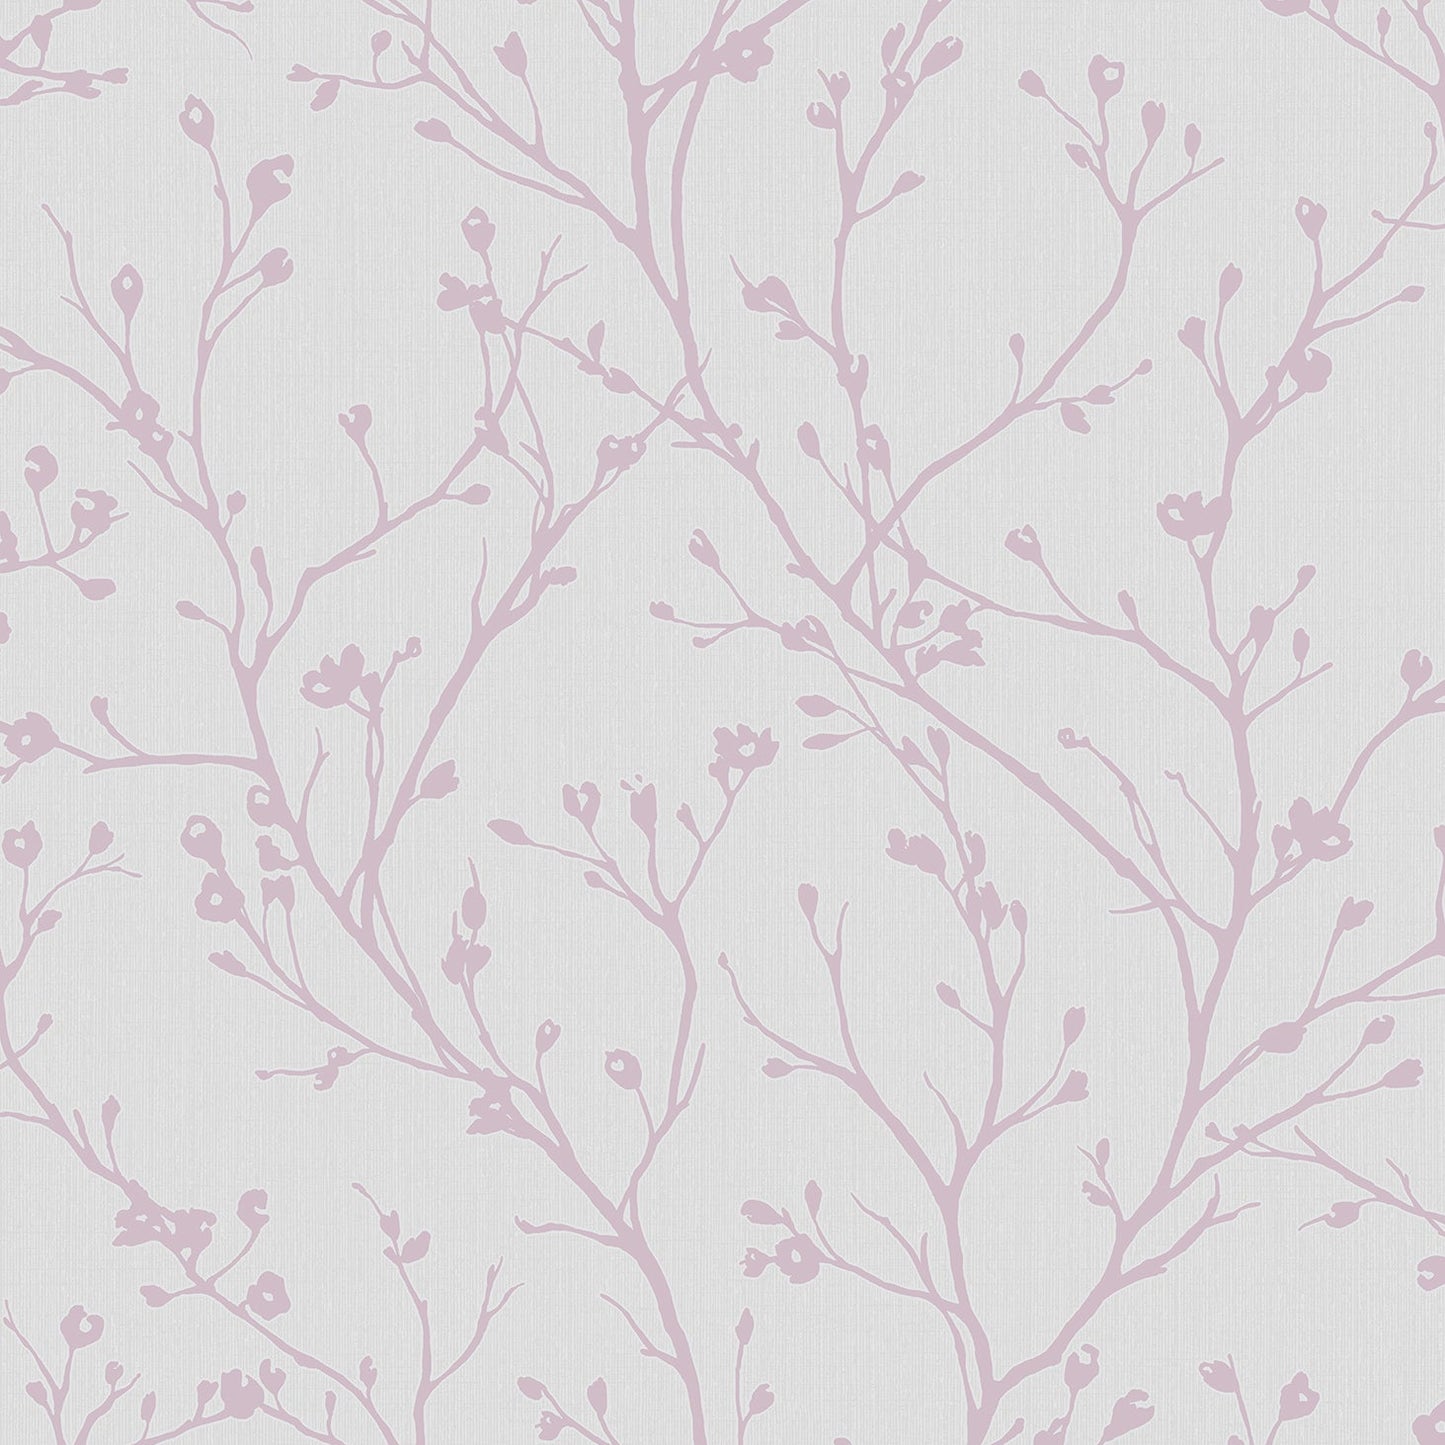 Purchase 2766-42035 KItchen & Bath Essentials Orchis Lavender Flower Branches Brewster Wallpaper